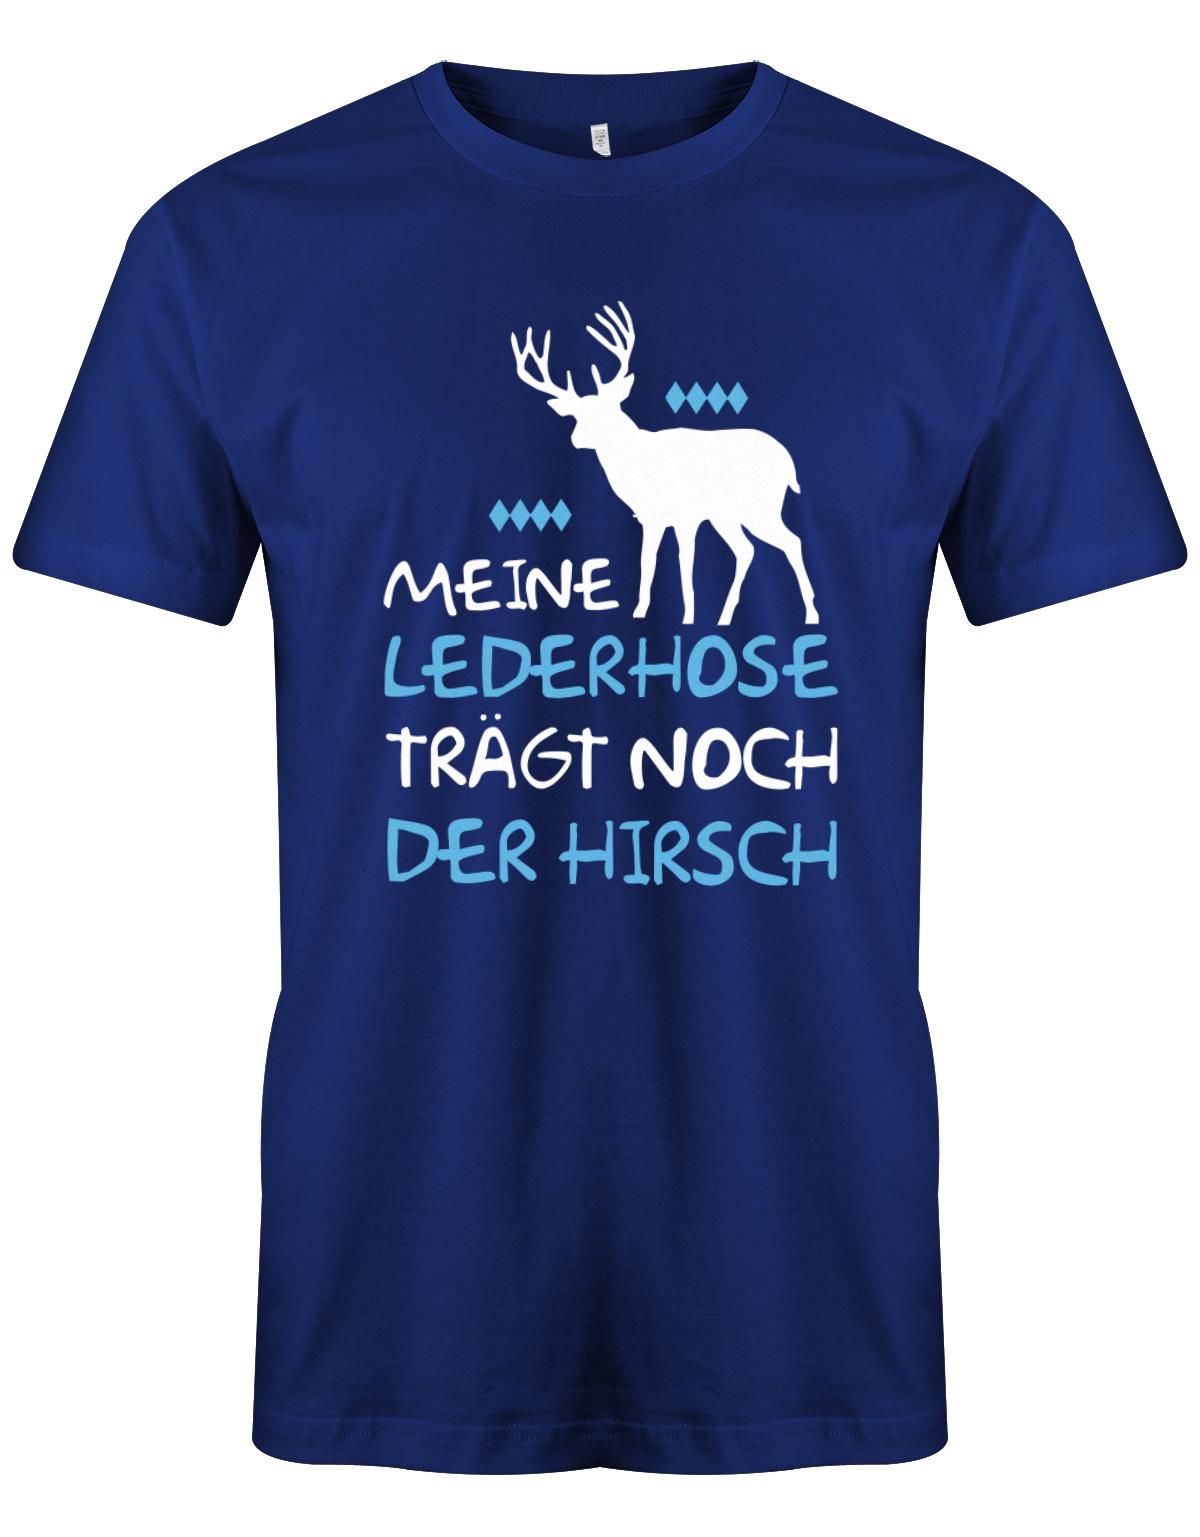 Meine-lederhose-traegt-noch-der-Hirsch-Oktoberfest-Herren-Shirt-royalblau